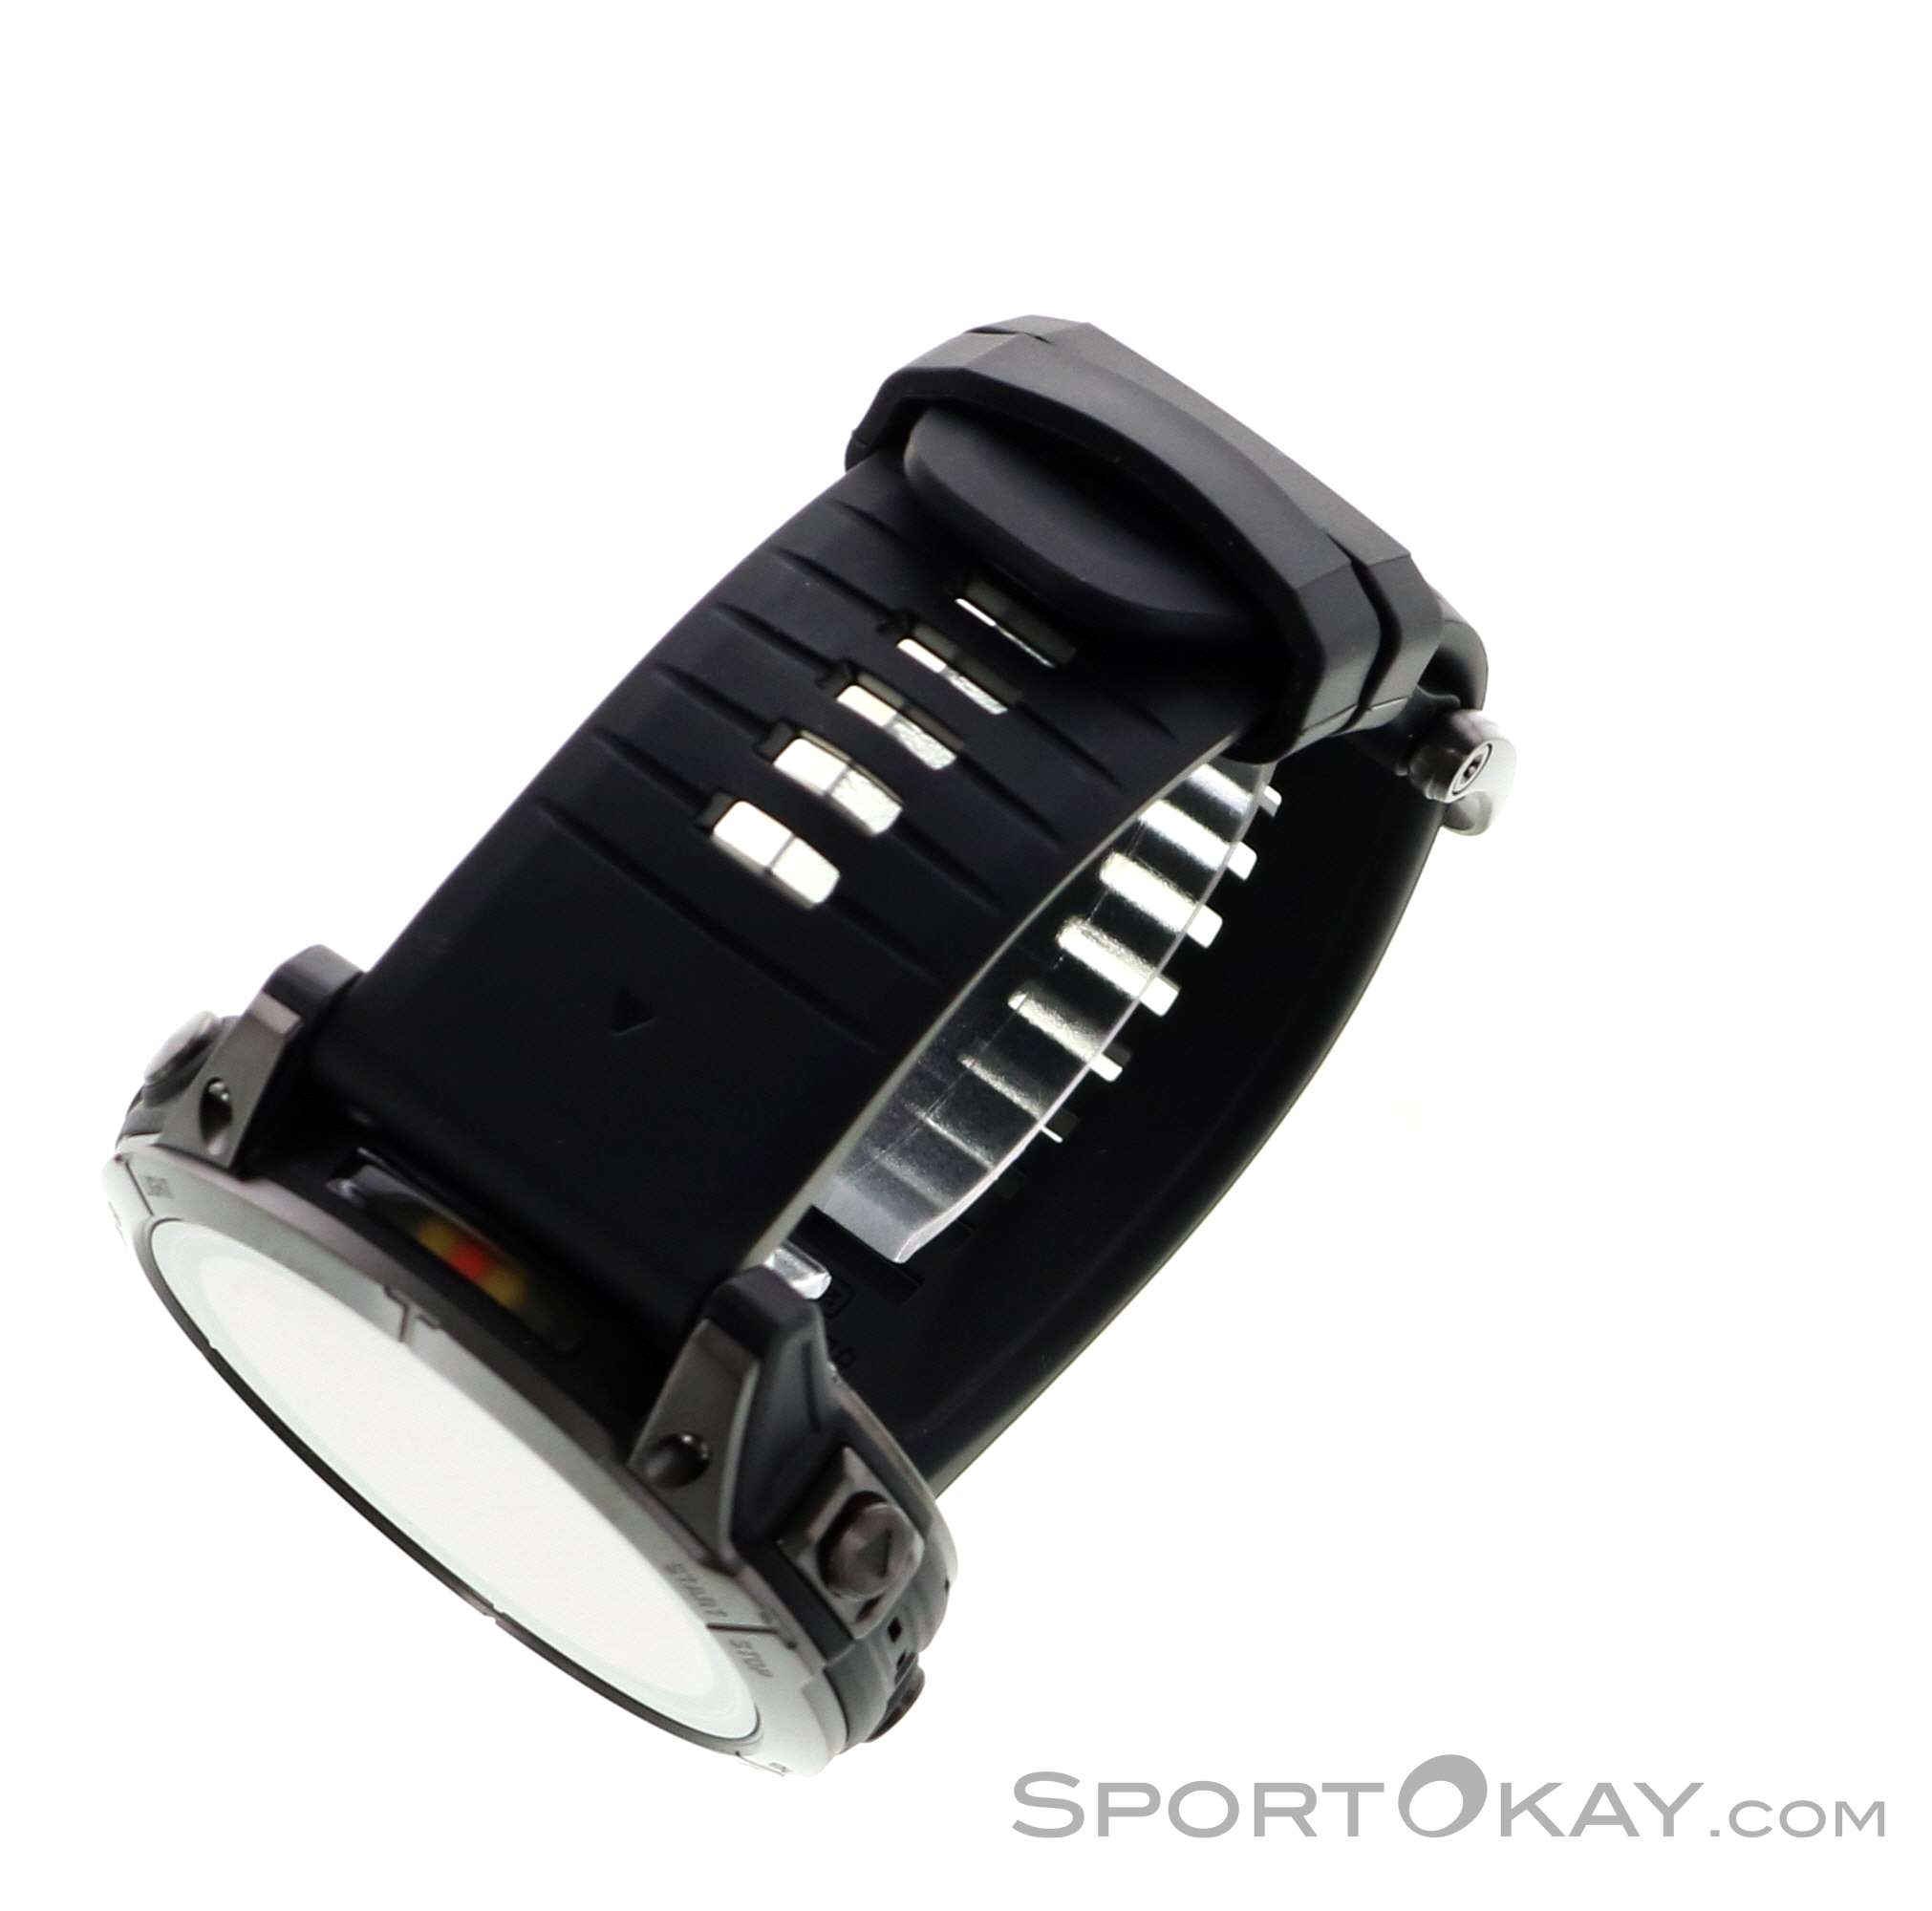 Garmin Epix Pro (Gen2) Sapphire 51mm GPS Sports Watch B-Stock - Montres de  course à pied - Cardiofréquencemètres - Digital - Tout